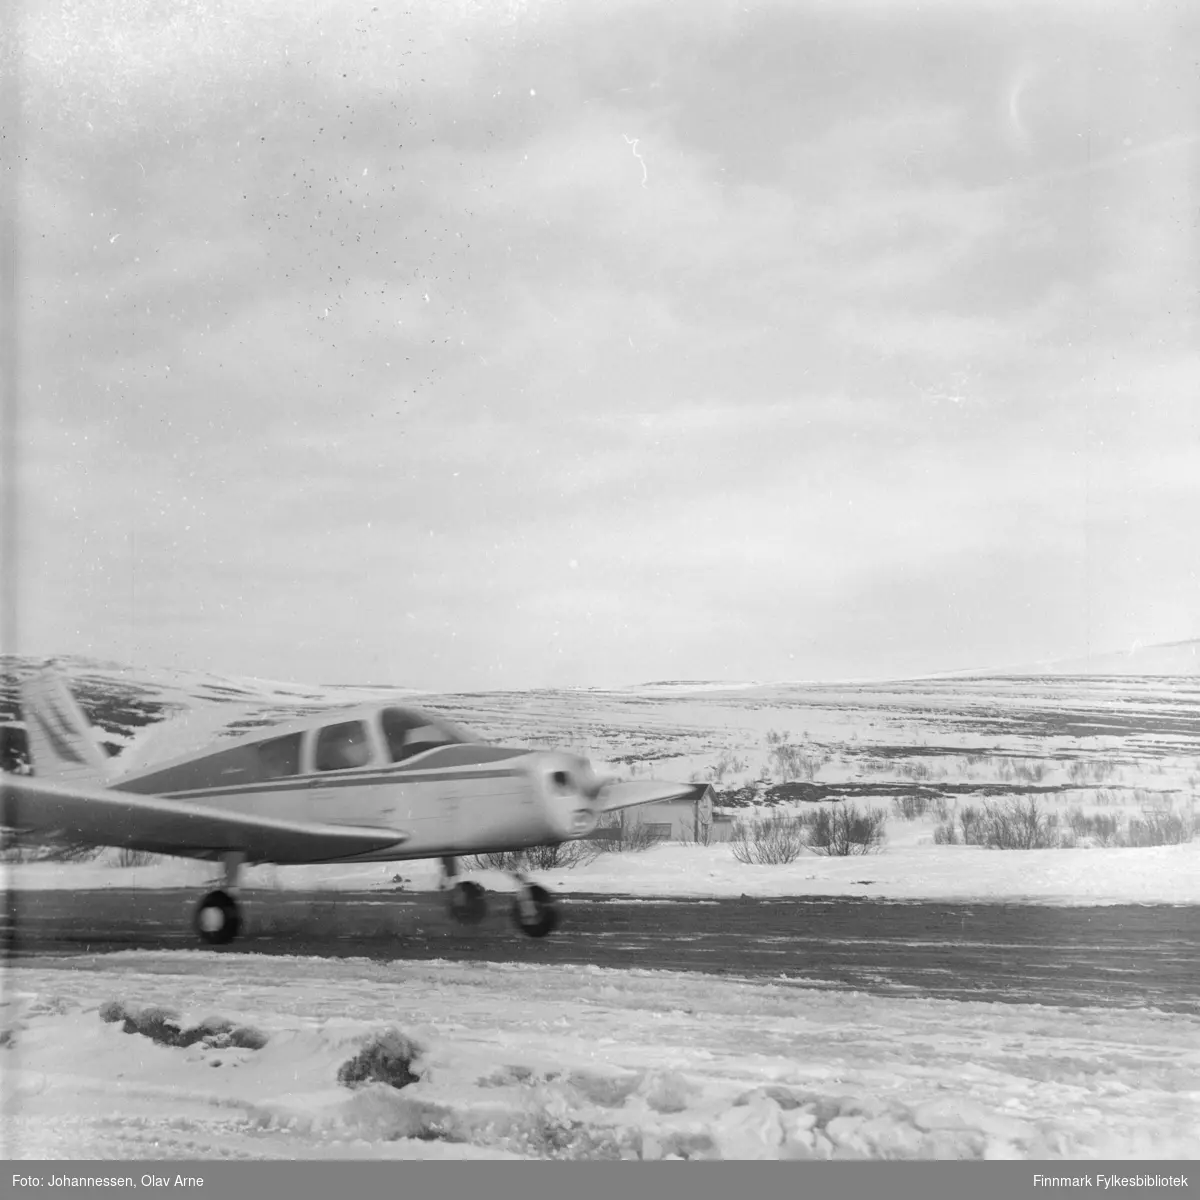 Foto av propellfly på Båtsfjord Flyplass på tidlig 1970-tallet

Flyet er omringet av sne og man ser vinterlandskap i bakgrunnen 